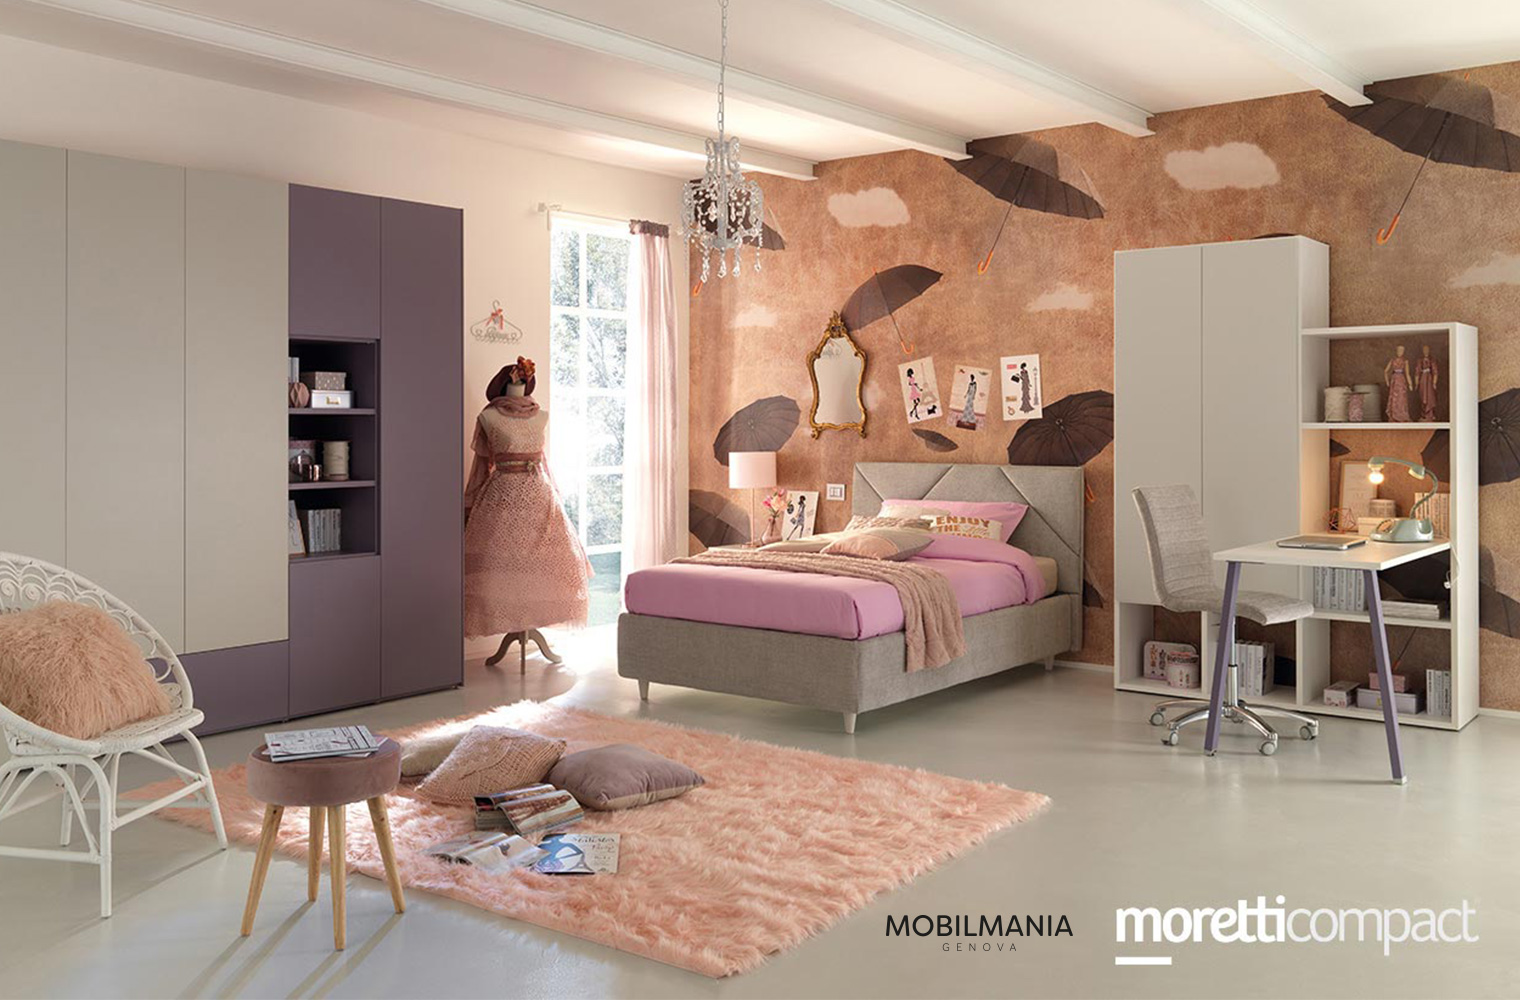 Mobilmania - Camerette Moretti Compact Genova